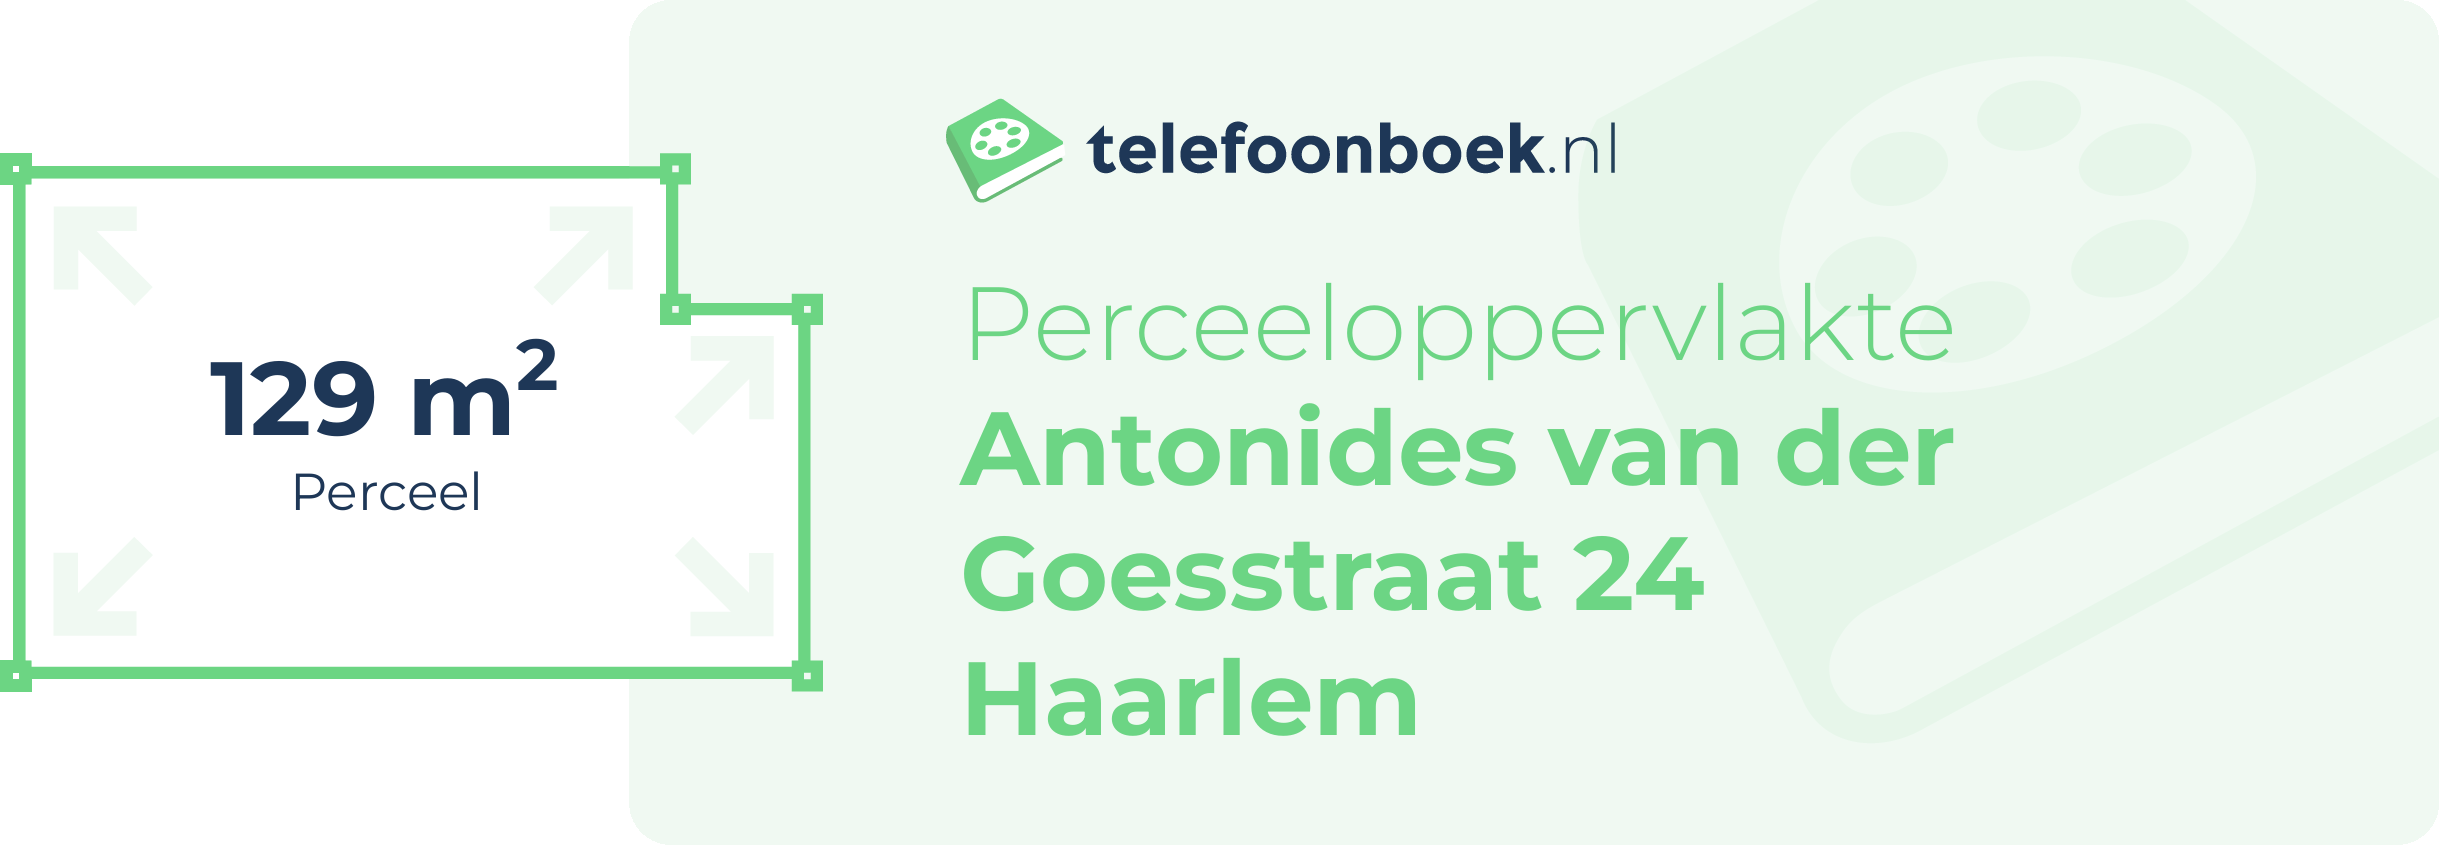 Perceeloppervlakte Antonides Van Der Goesstraat 24 Haarlem